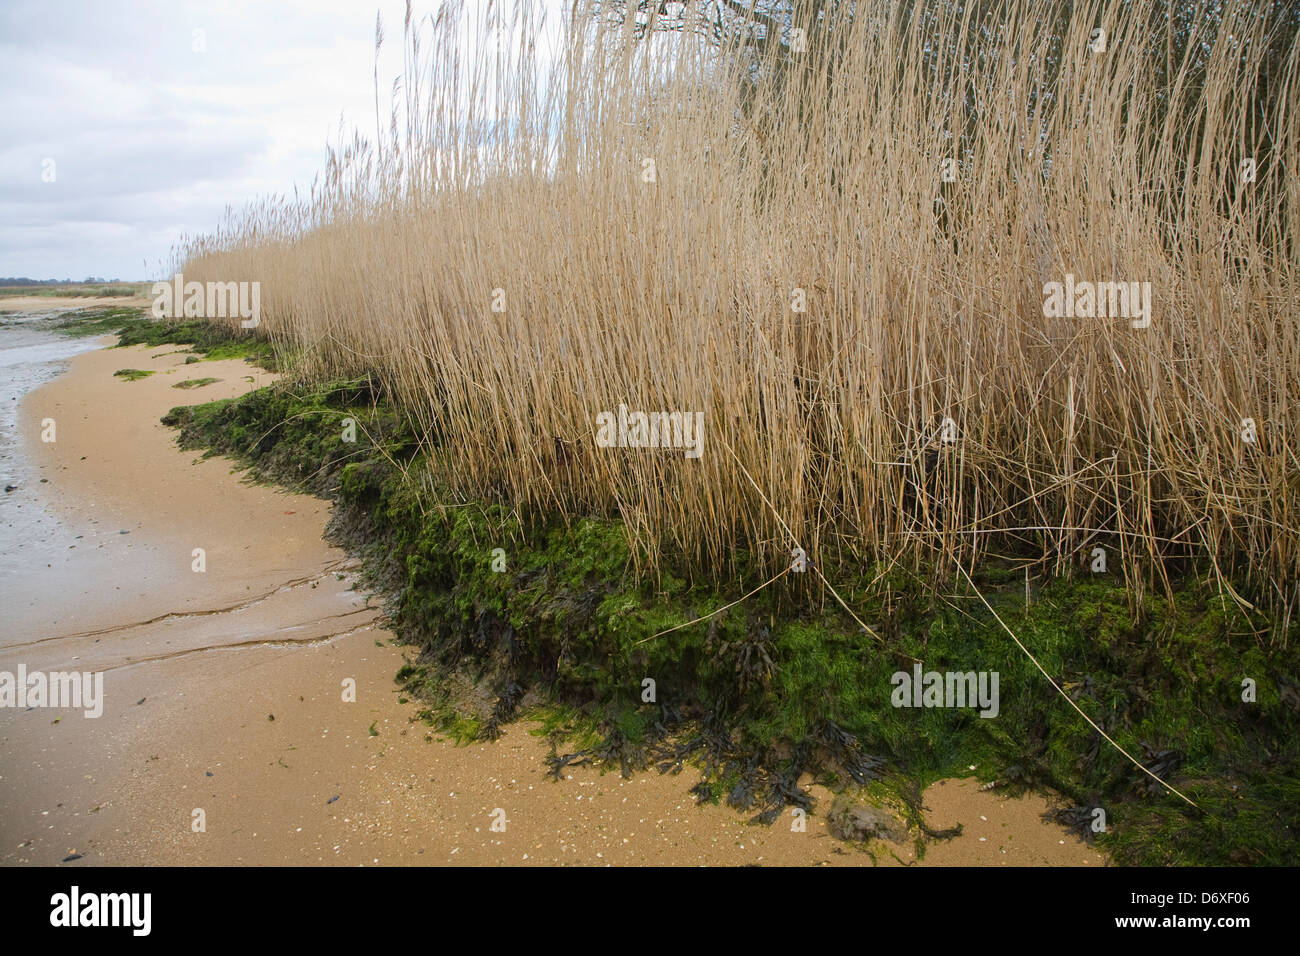 Détail de roseaux au bord de l'eau à marée basse rivière Deben, Suffolk, Angleterre Banque D'Images